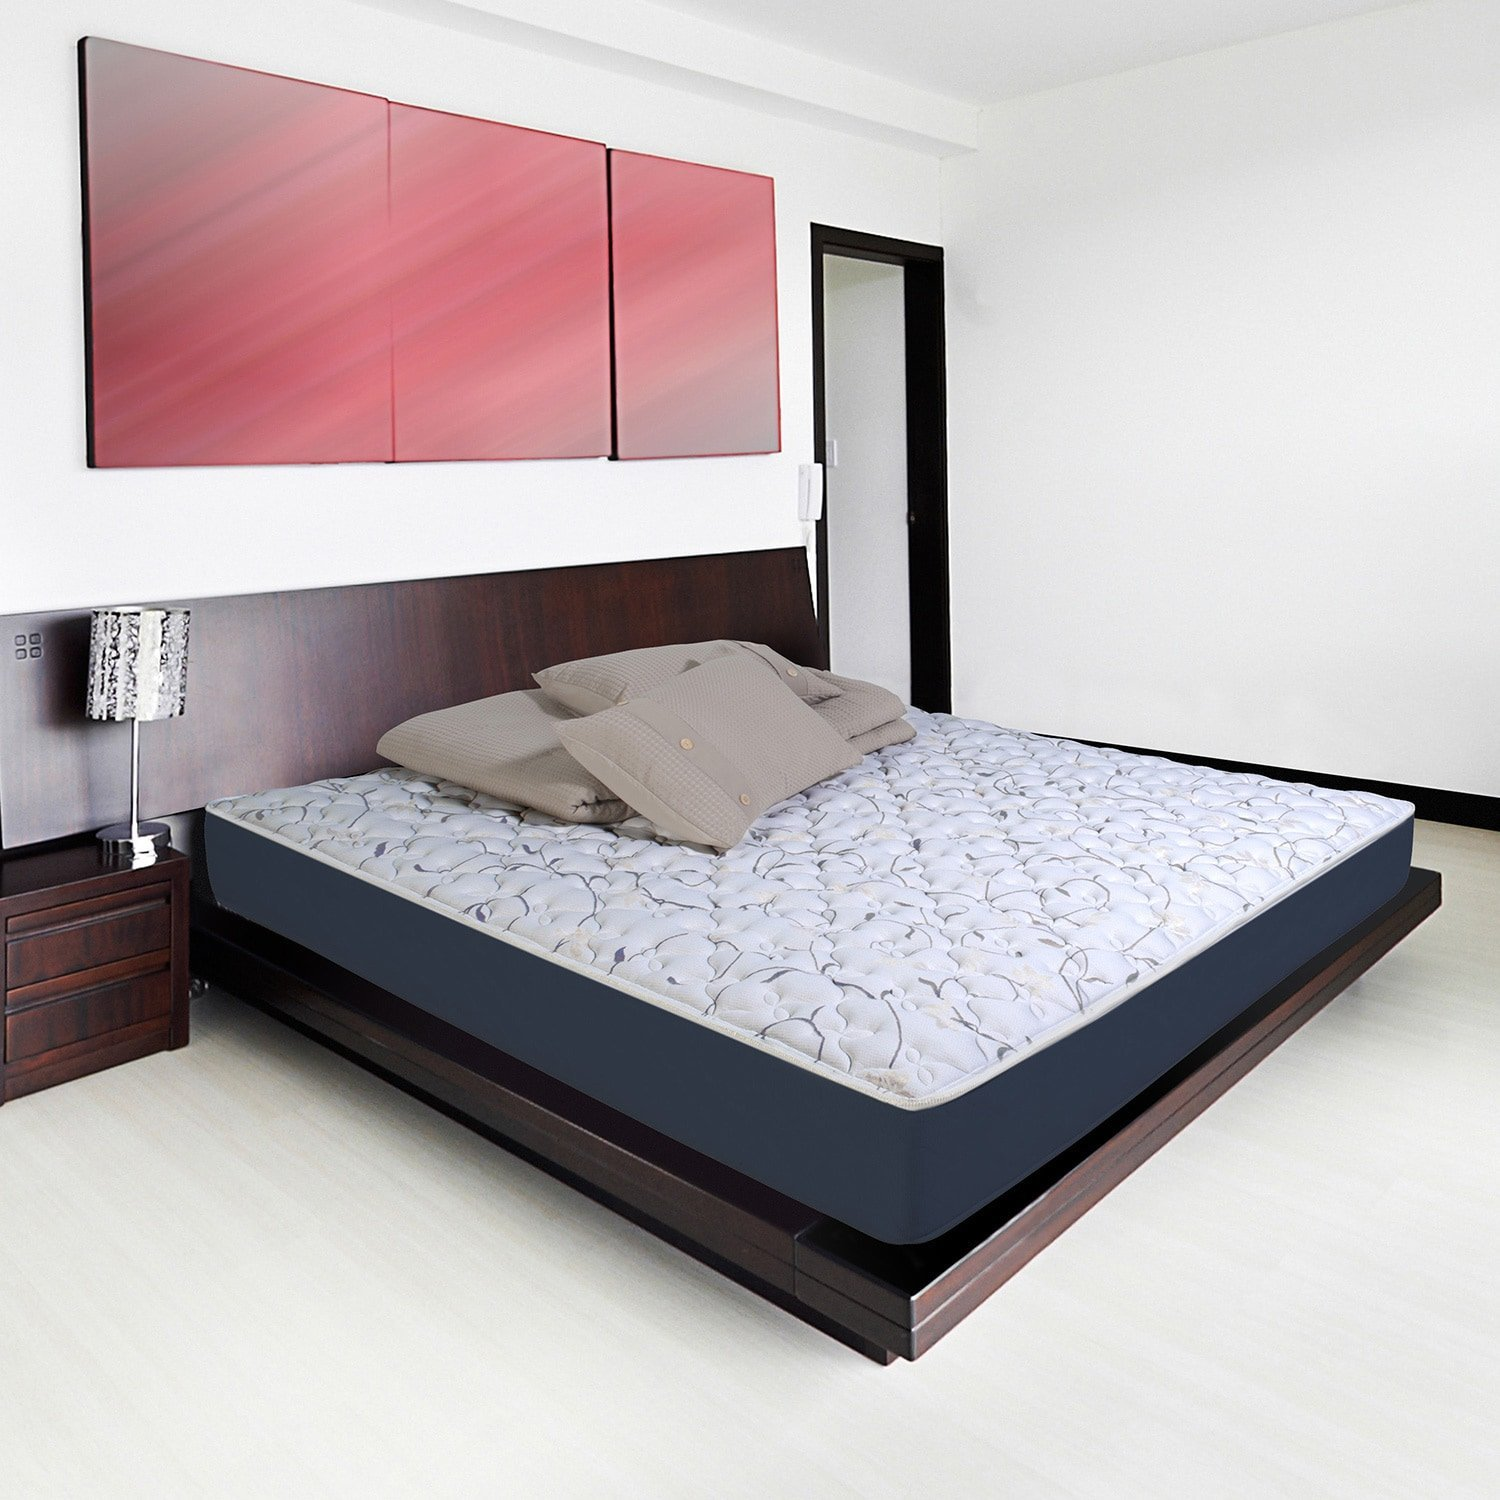 Як вибрати матрац для двоспального ліжка? Огляд брендів, технологій і наповнювачів